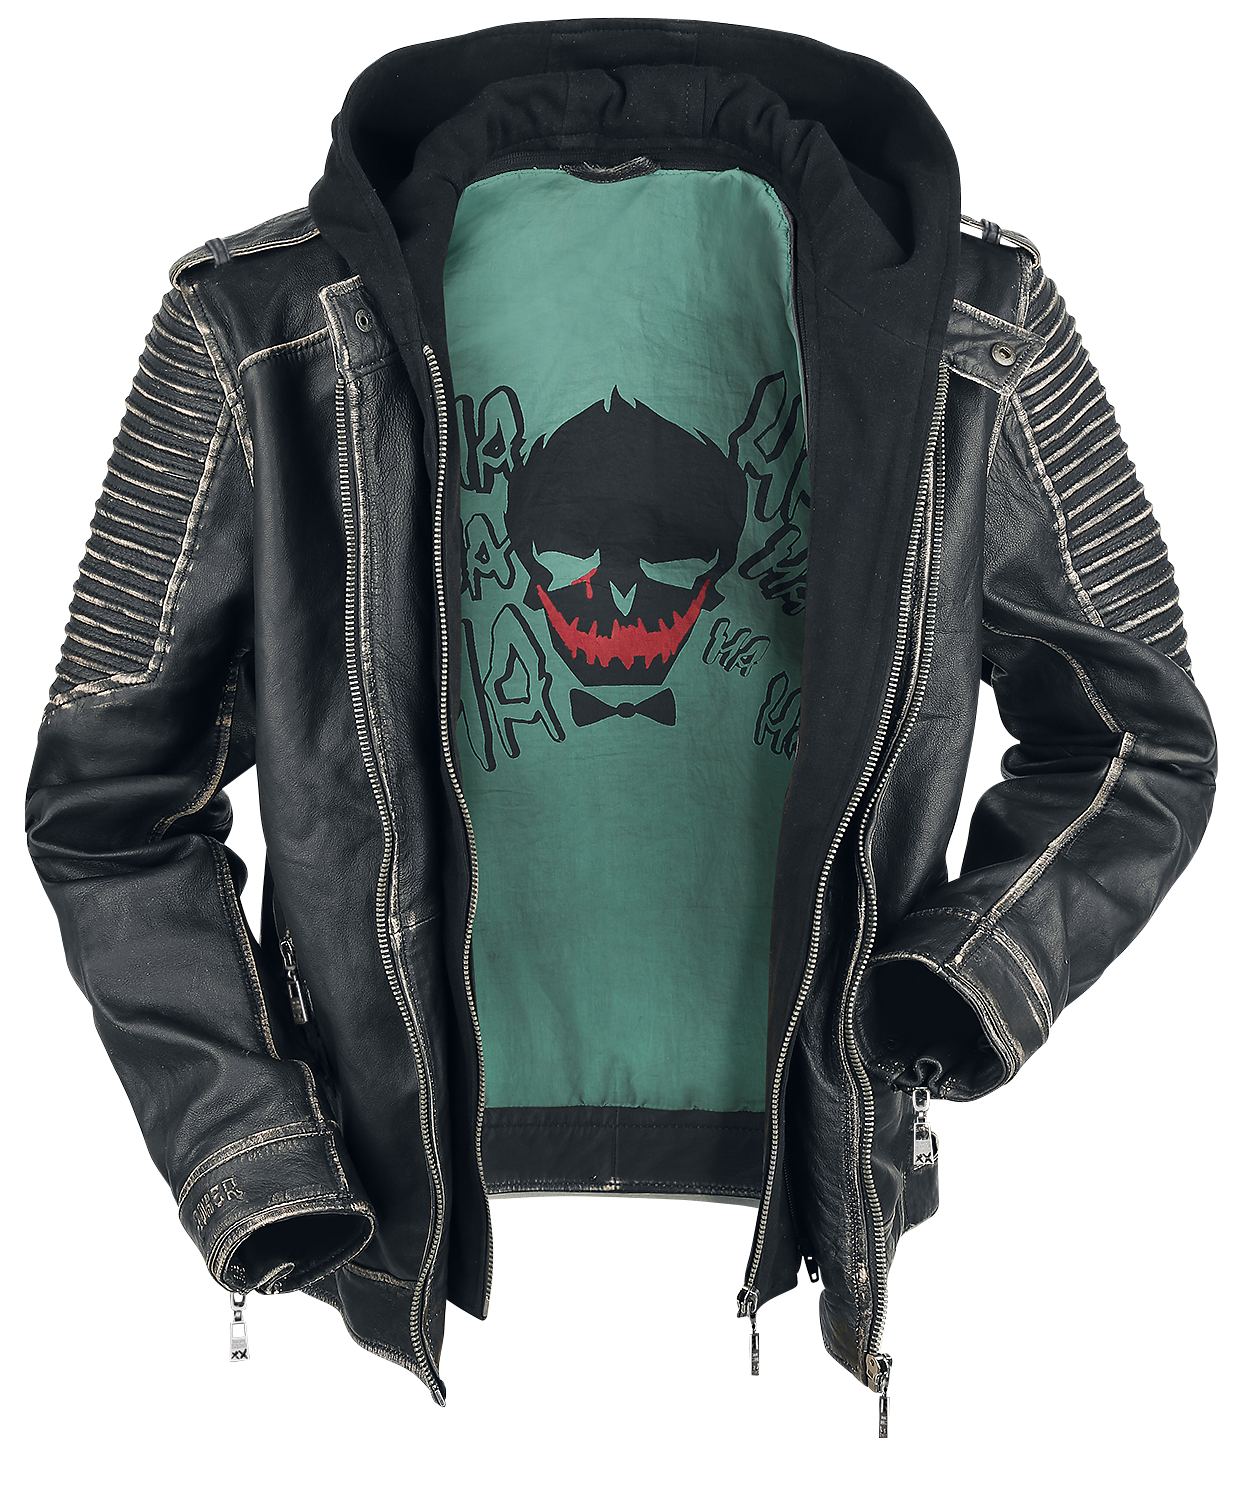 Suicide Squad - DC Comics Lederjacke - The Joker - S bis 3XL - für Männer - Größe 3XL - schwarz  - EMP exklusives Merchandise!